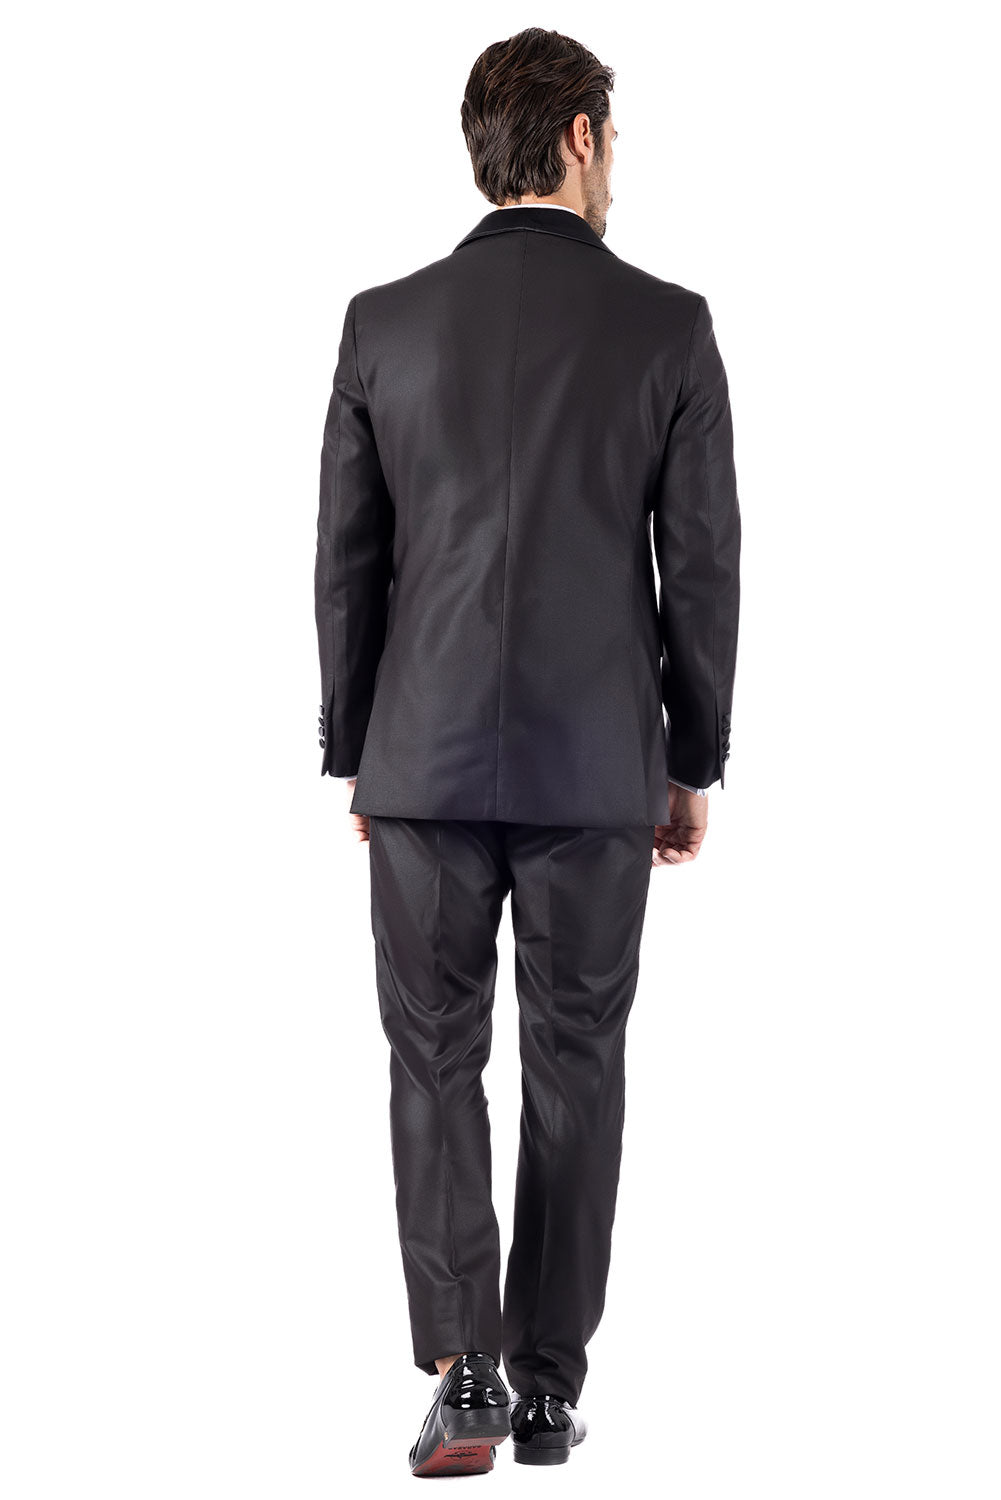 BARABAS Men's Solid Color Shawl Lapel Suit Vest Set 4TU04 Black